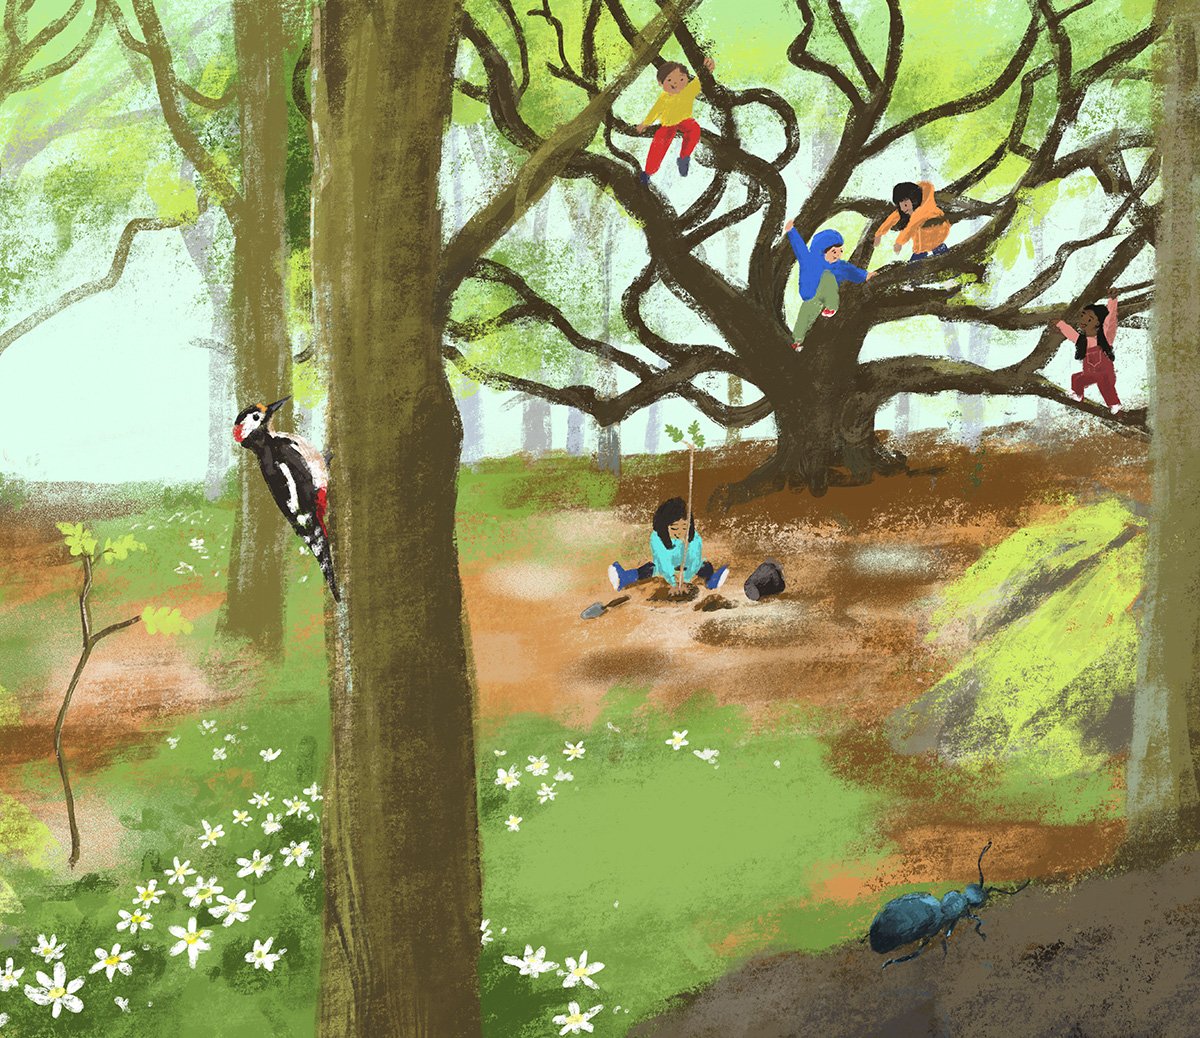 jenny-bloomfield-kids-in-a-tree-illustration.jpg